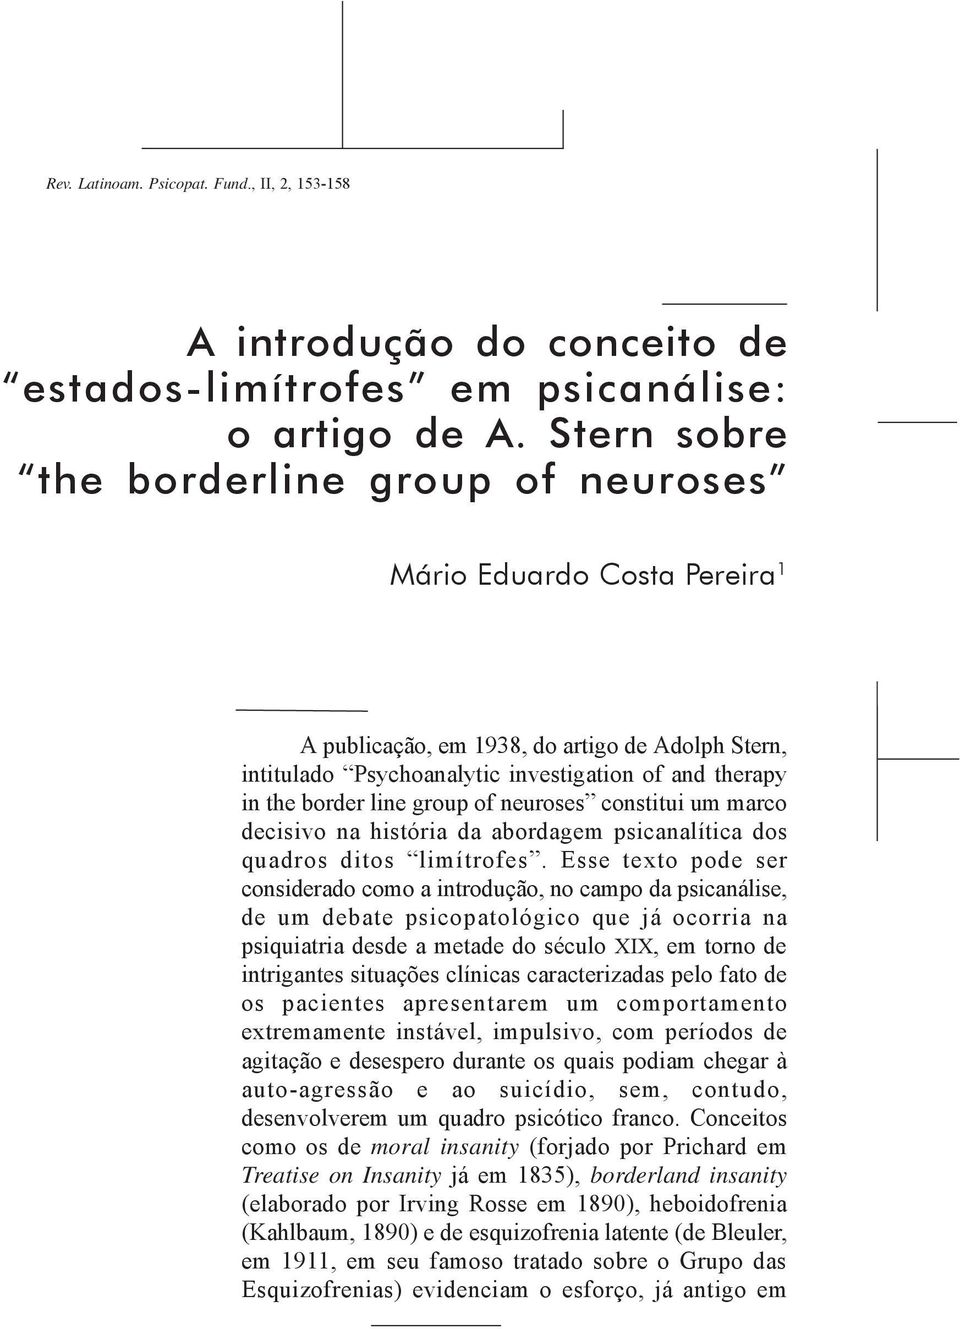 group of neuroses constitui um marco decisivo na história da abordagem psicanalítica dos quadros ditos limítrofes.